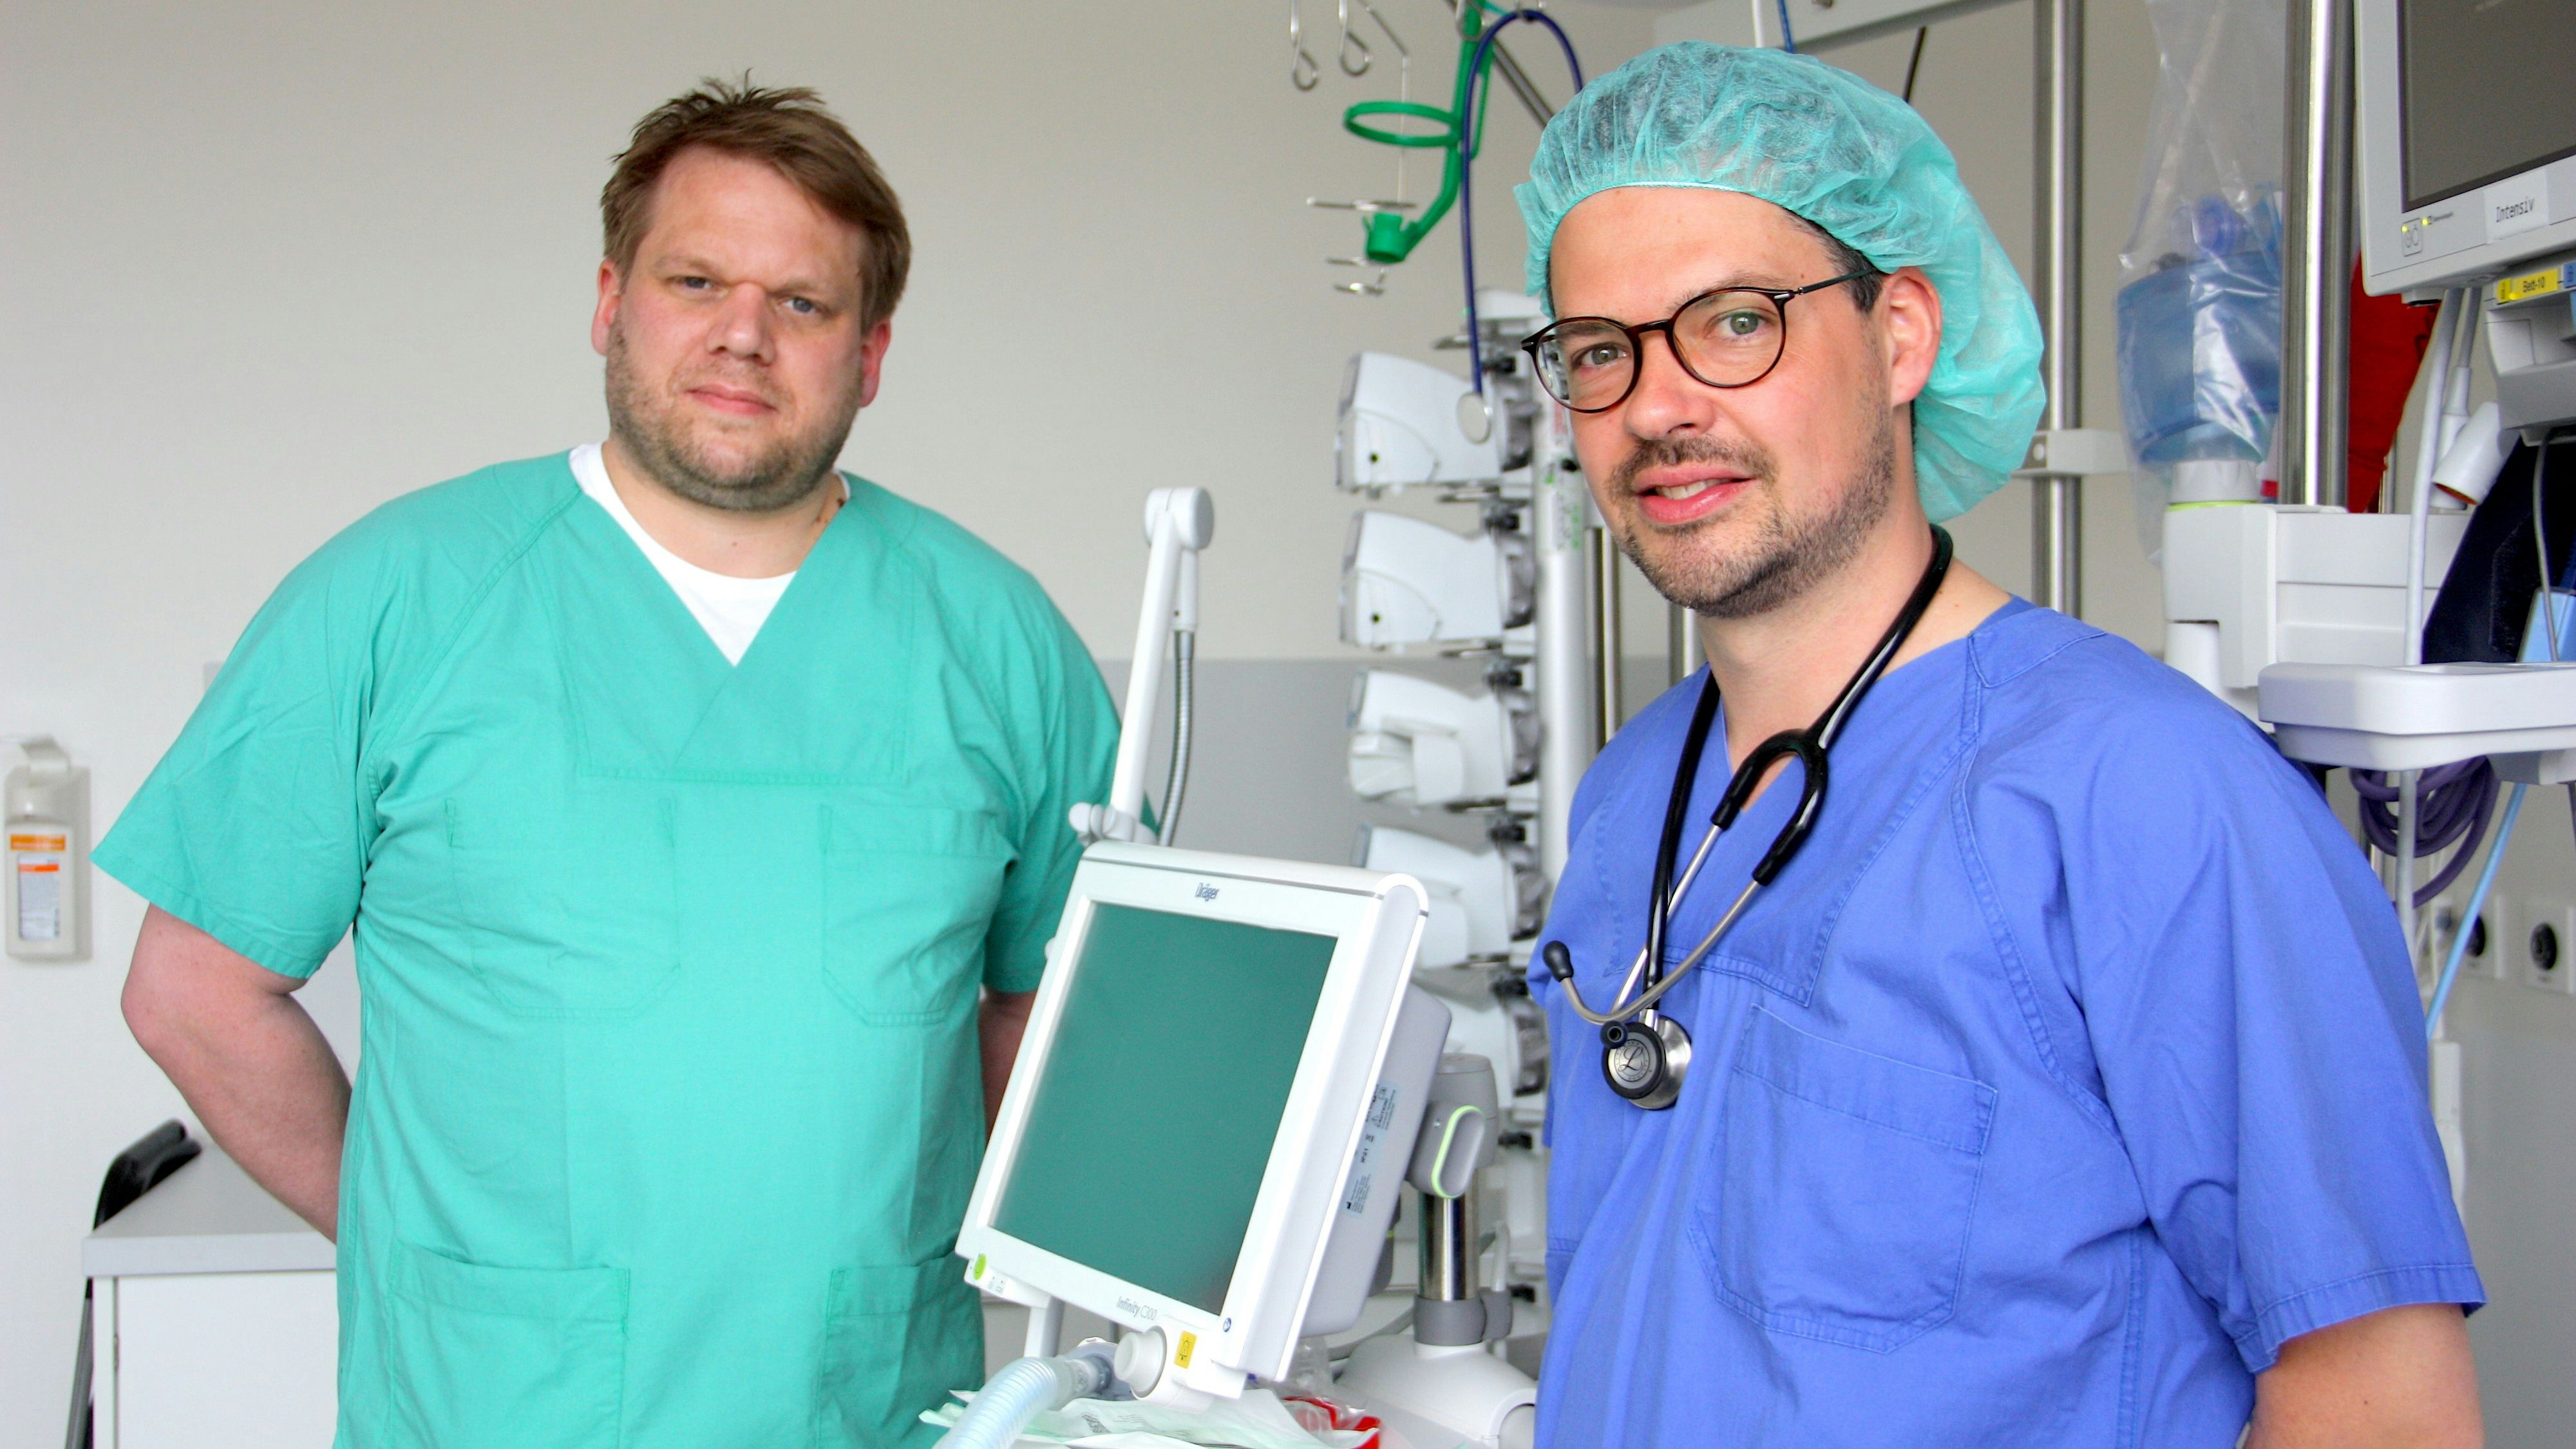 Wollen eine gute Atmosphäre im Team: Dr. Christoph Reinke (links) und Dr. Simon Moormann stellen sich im Dammer Krankenhaus neuen Herausforderungen.&nbsp; &nbsp;Foto: Bernhardt